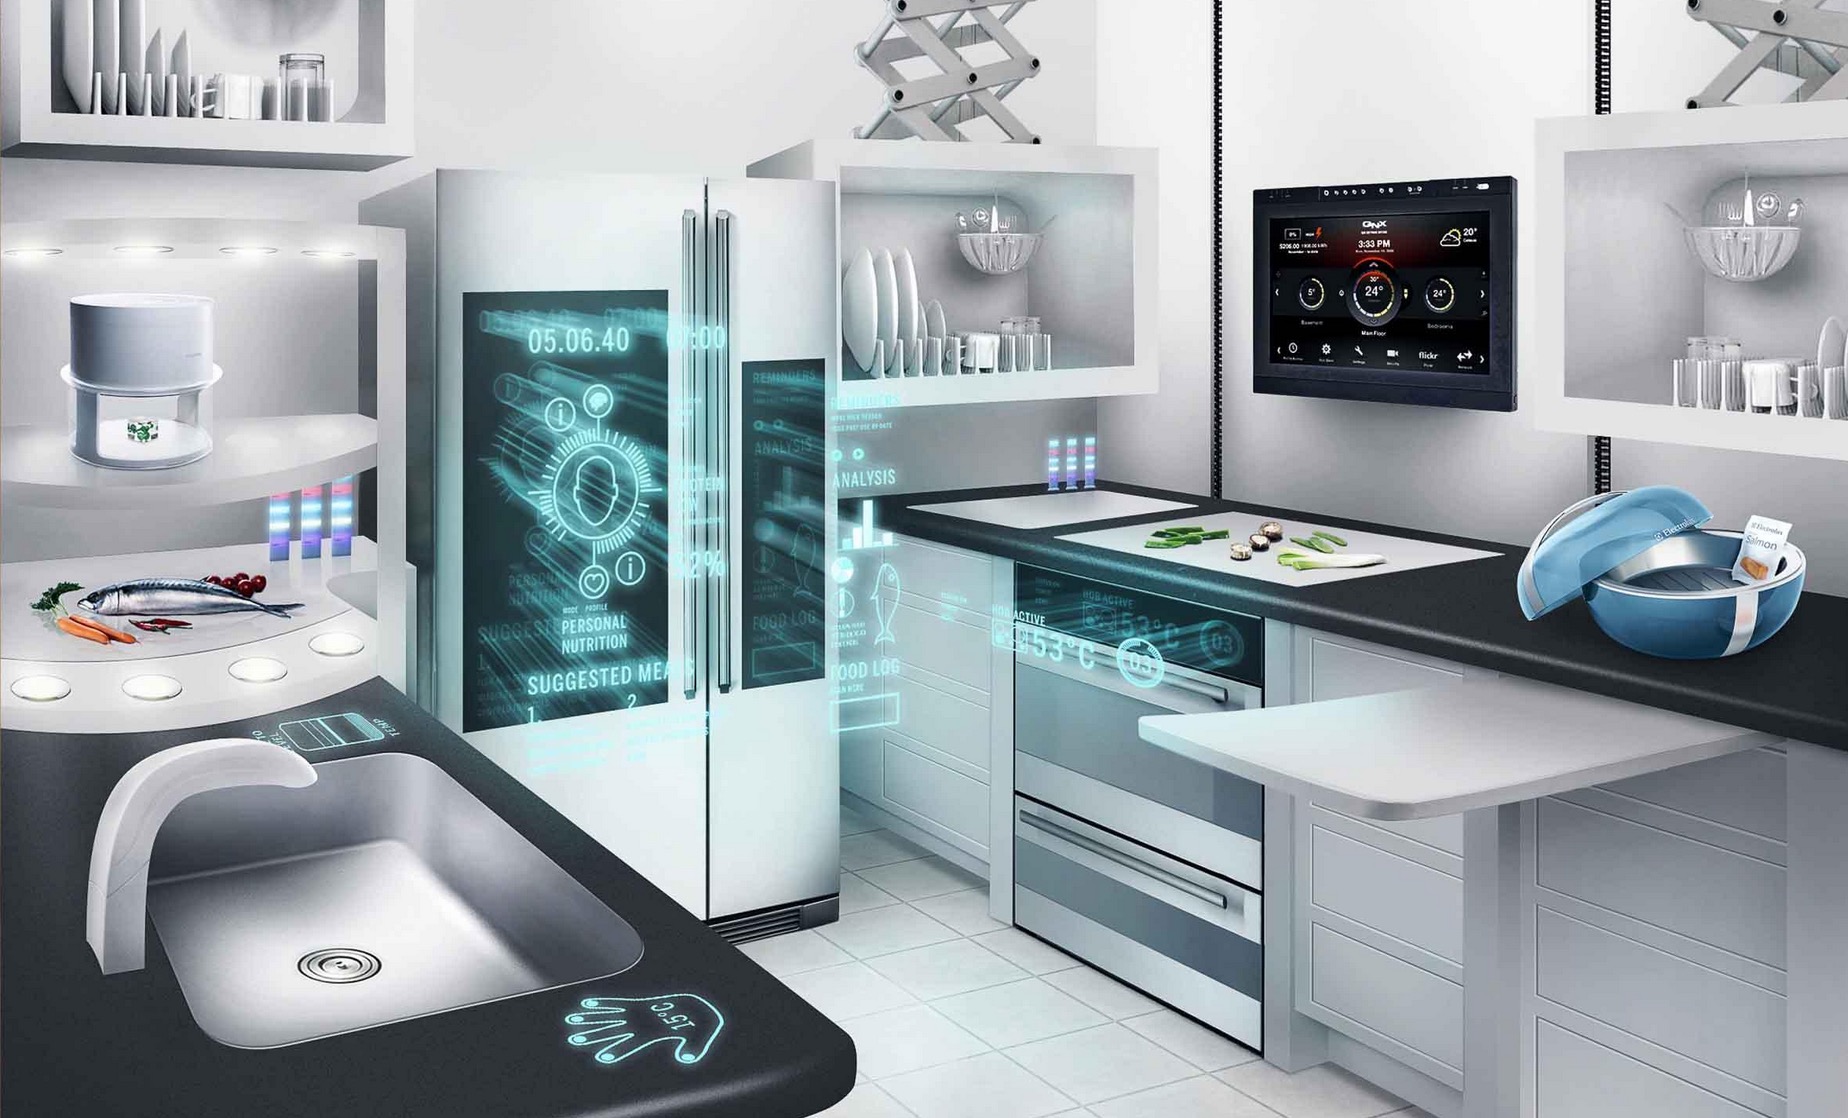 mozilla robot cuisine smart kitchen pour savoir quoi manger